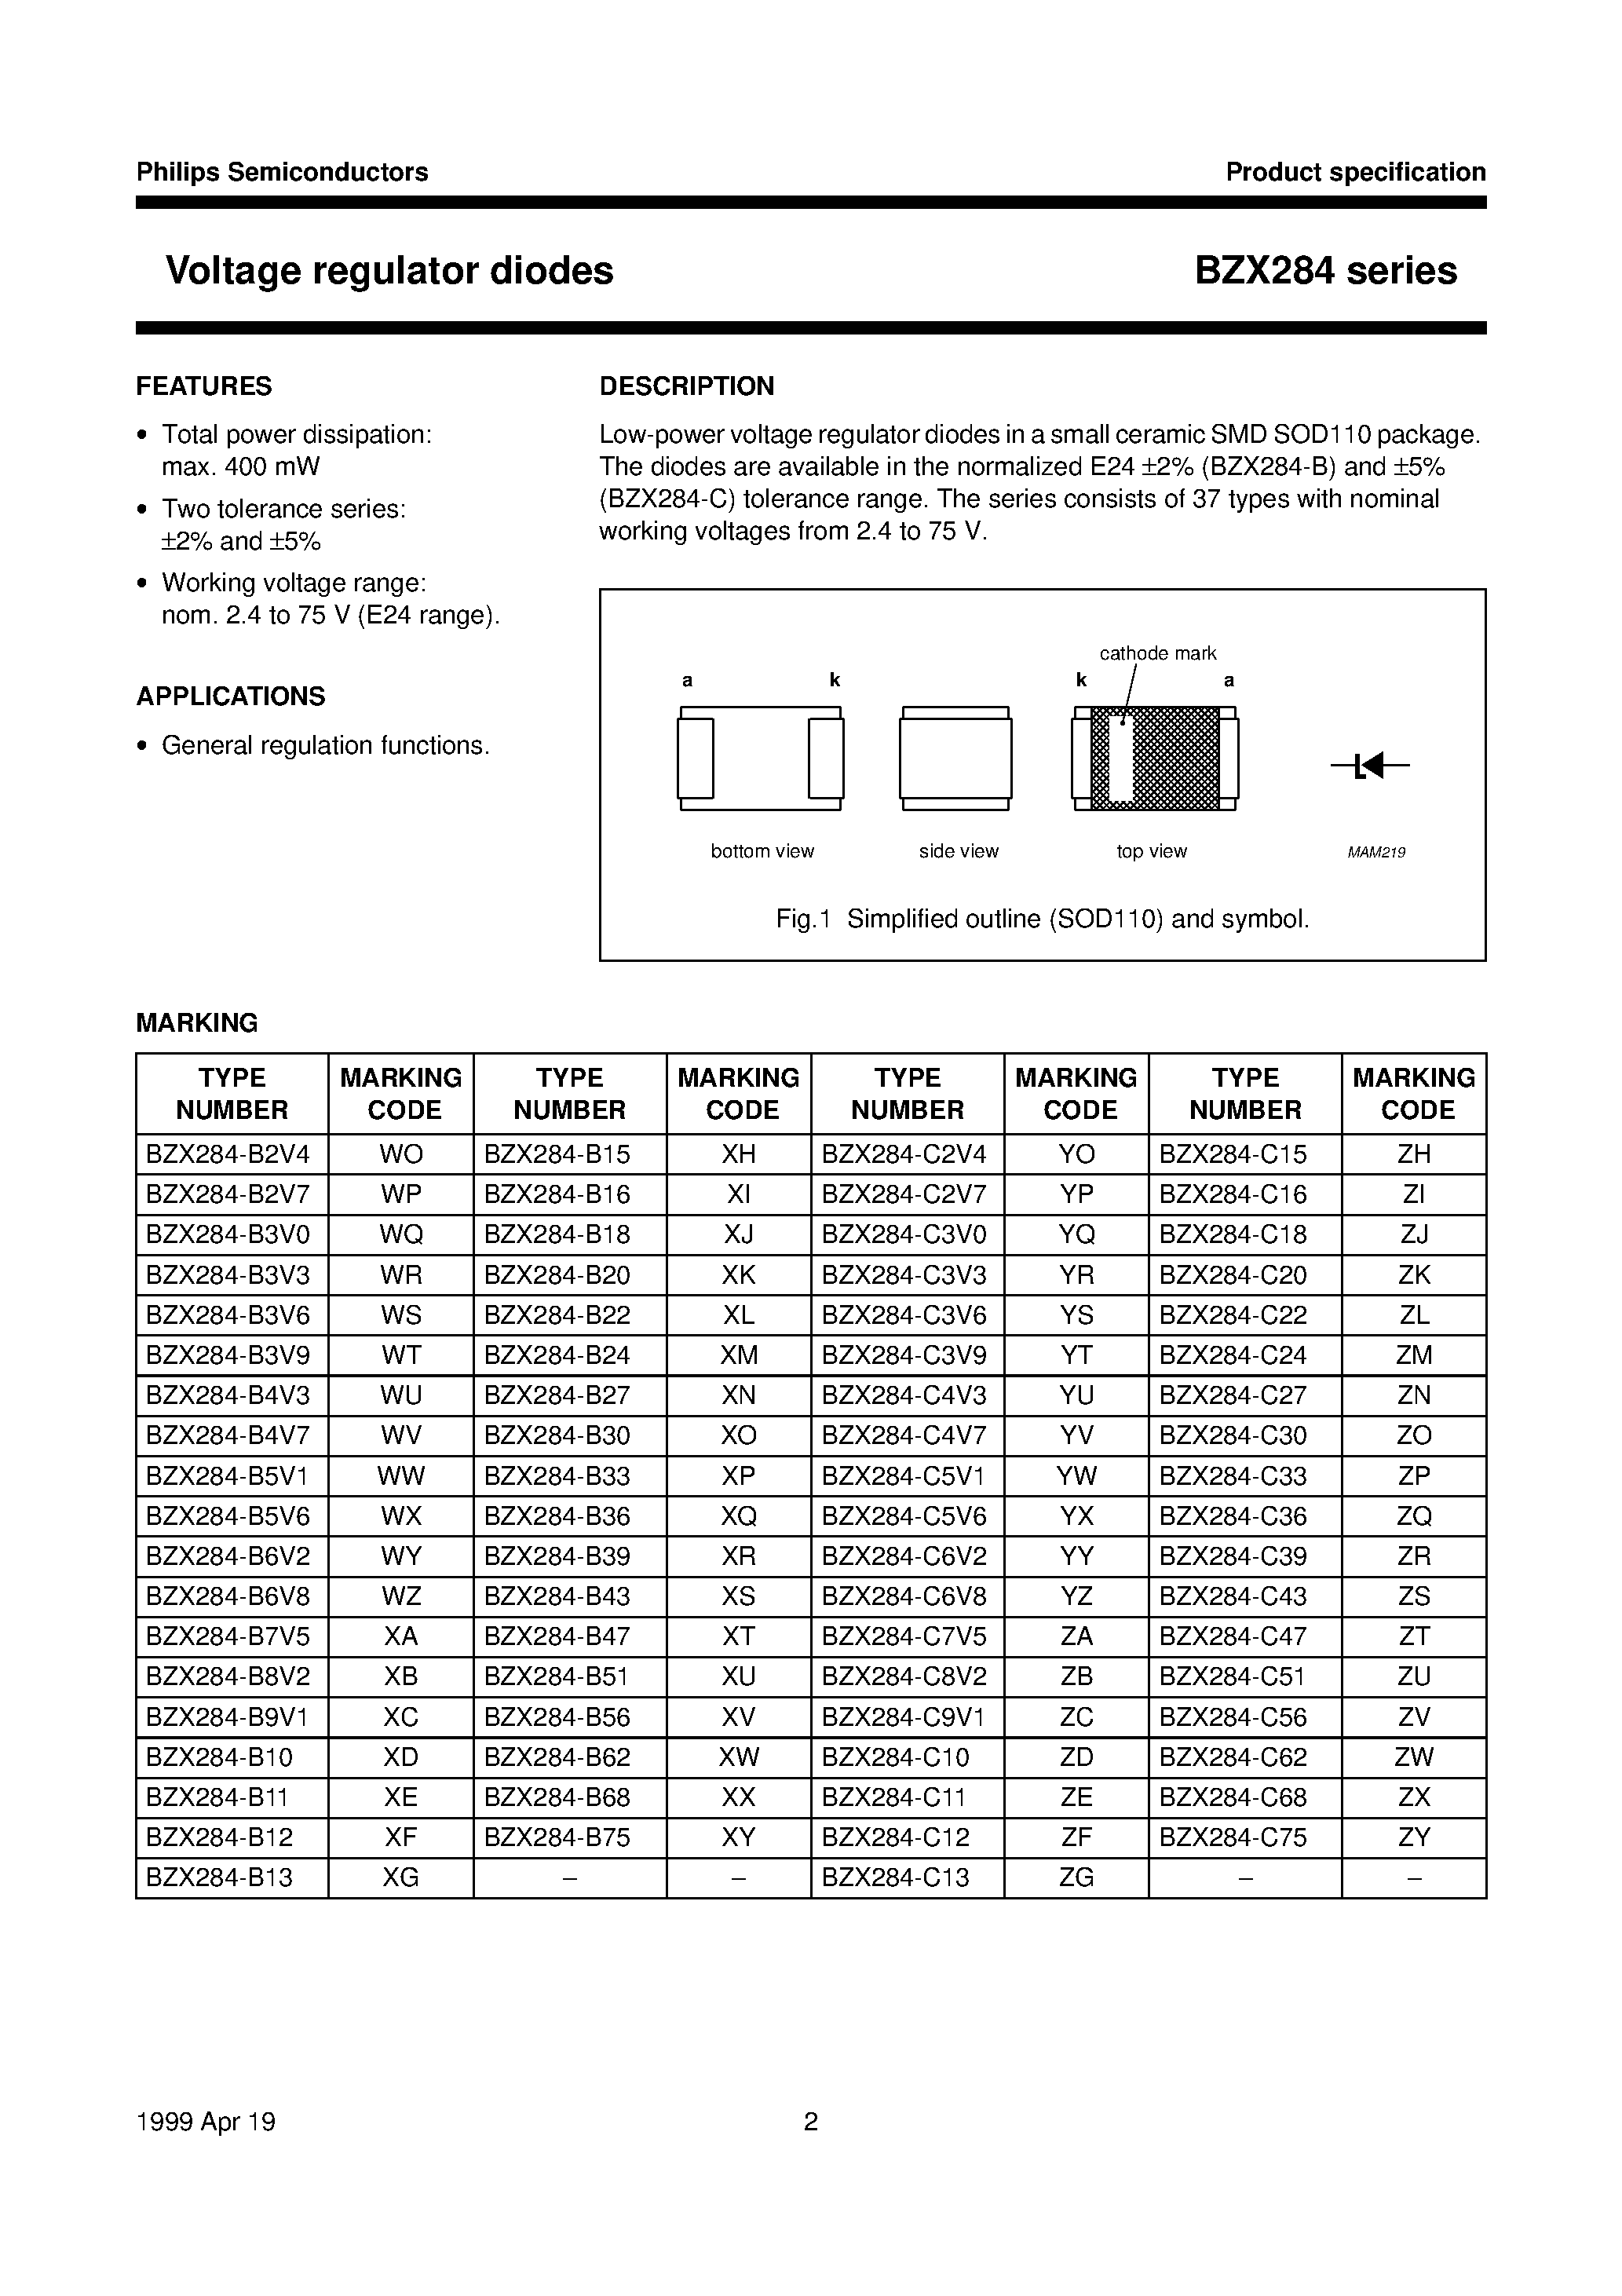 Datasheet BZX284-B12 - Voltage regulator diodes page 2